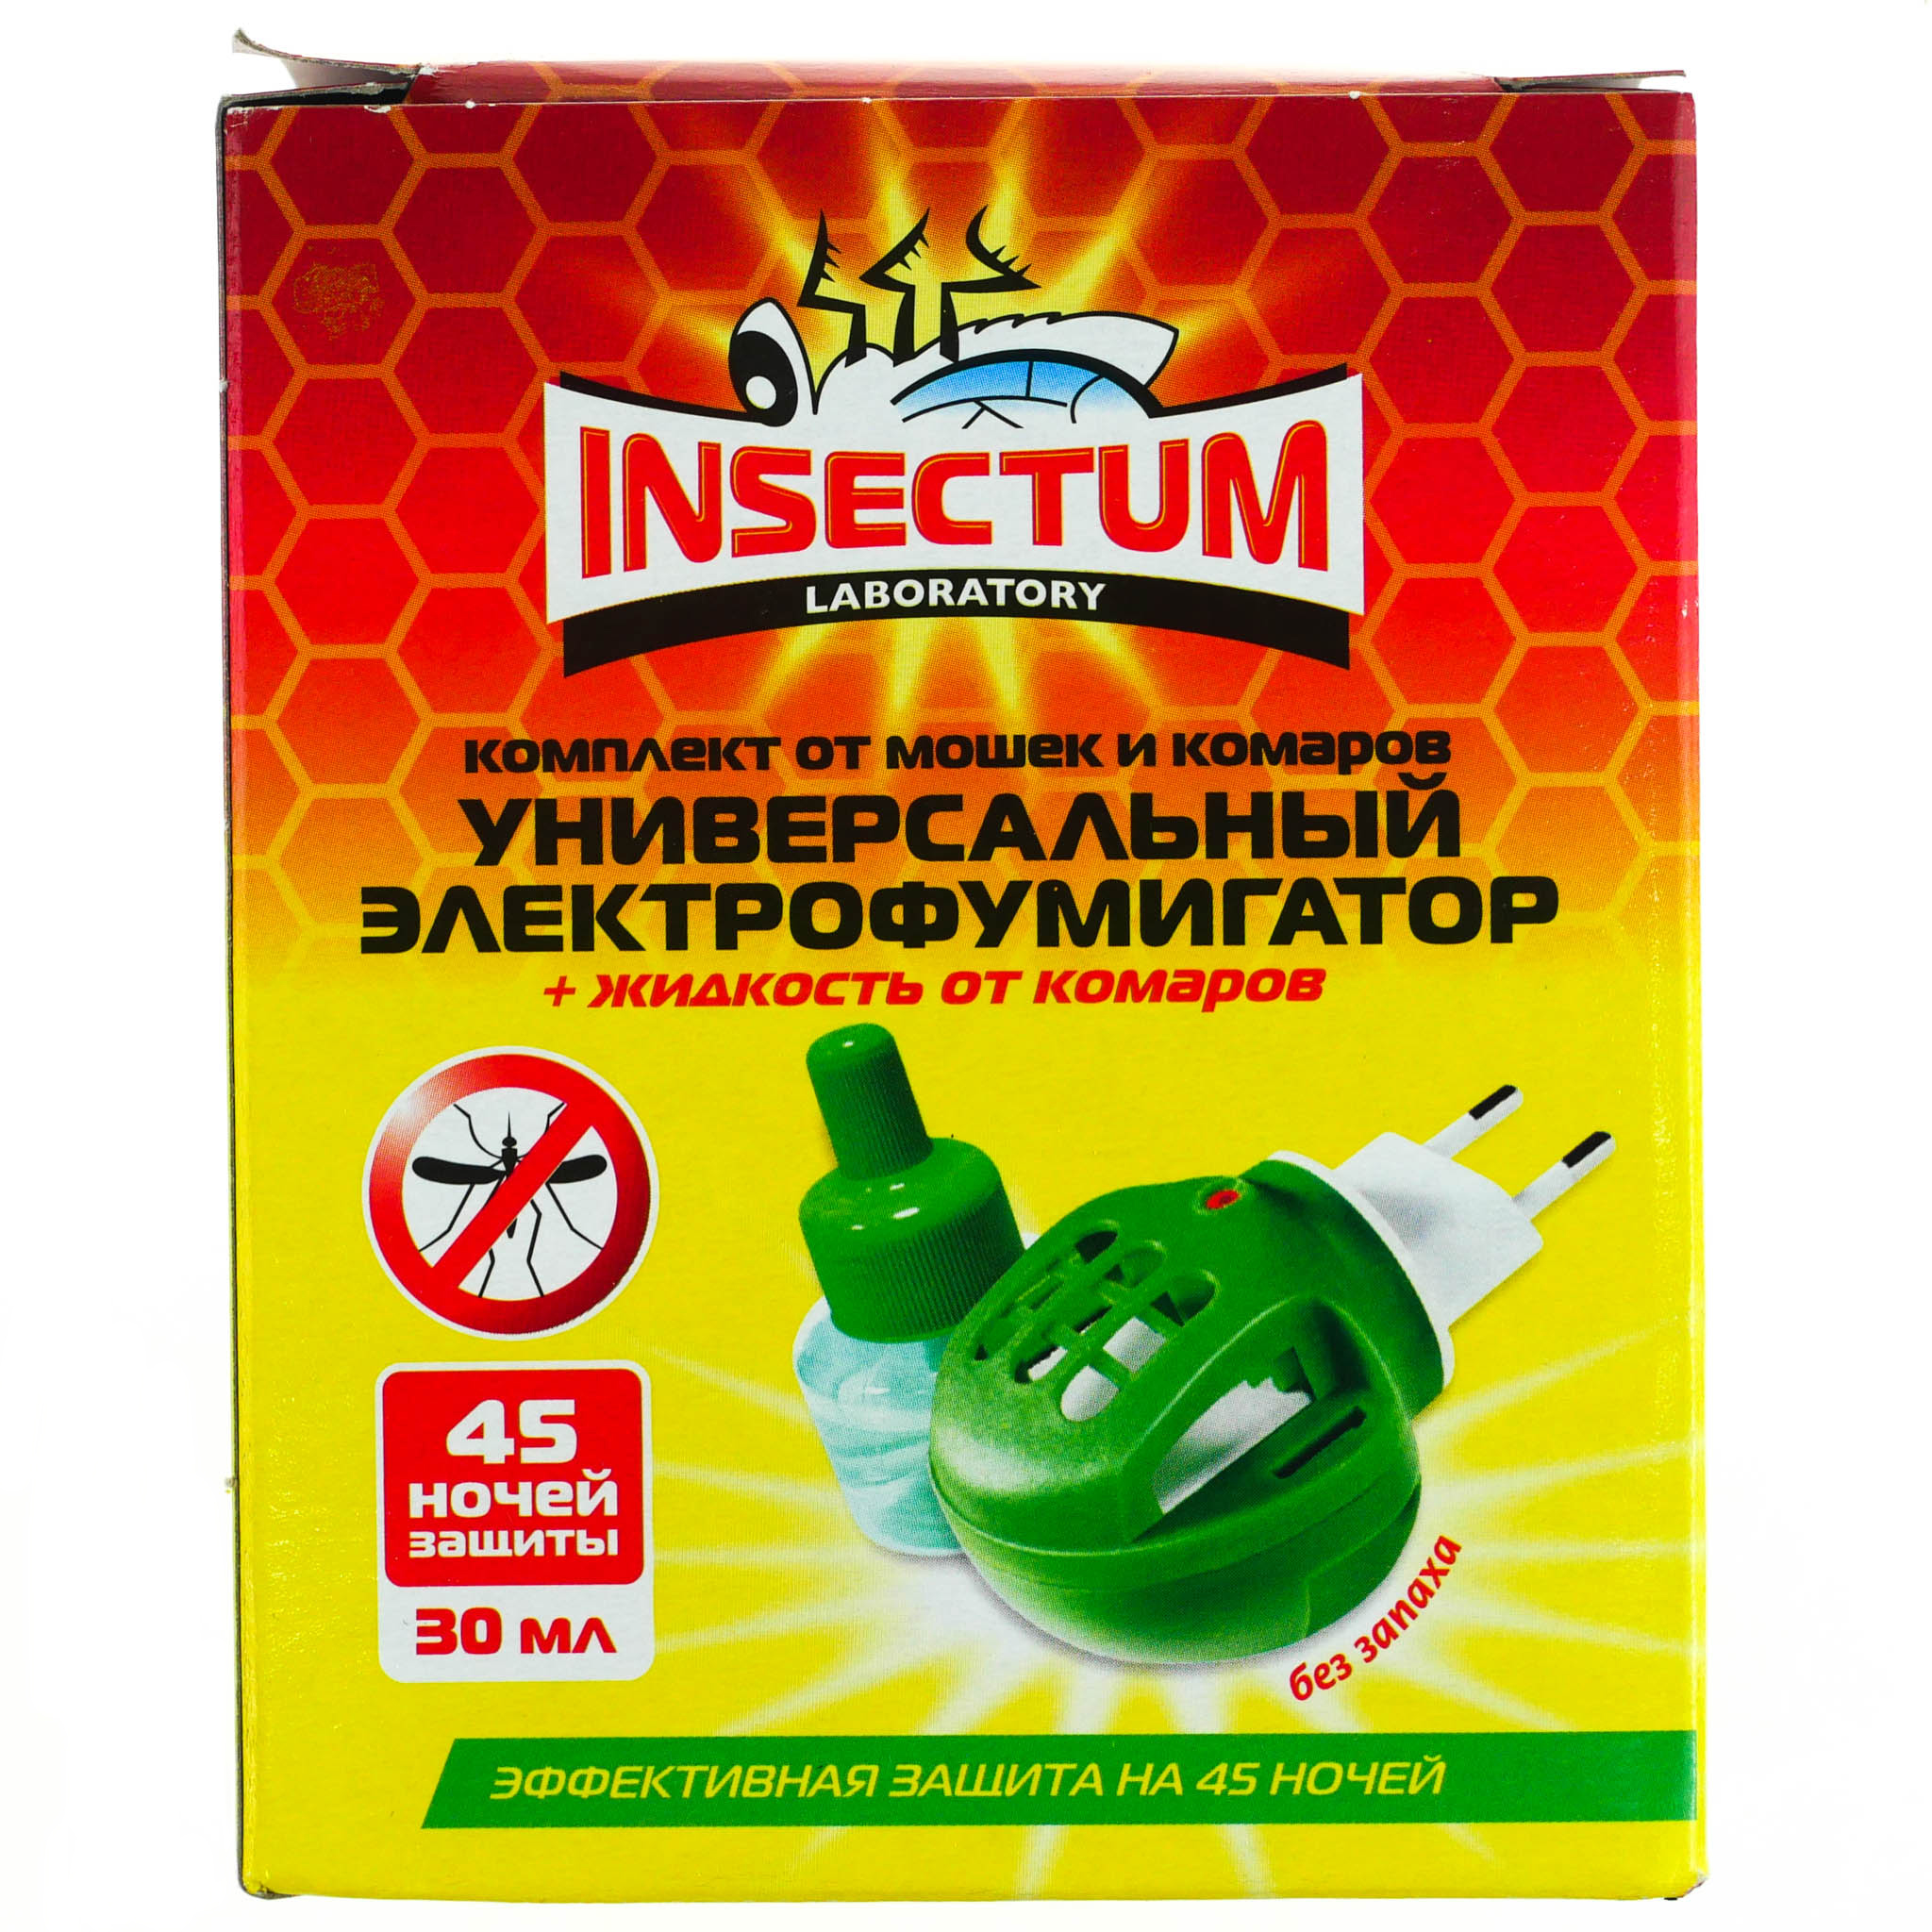  для защиты от насекомых Insectum (Инсектум) фумигатор+жидкость .